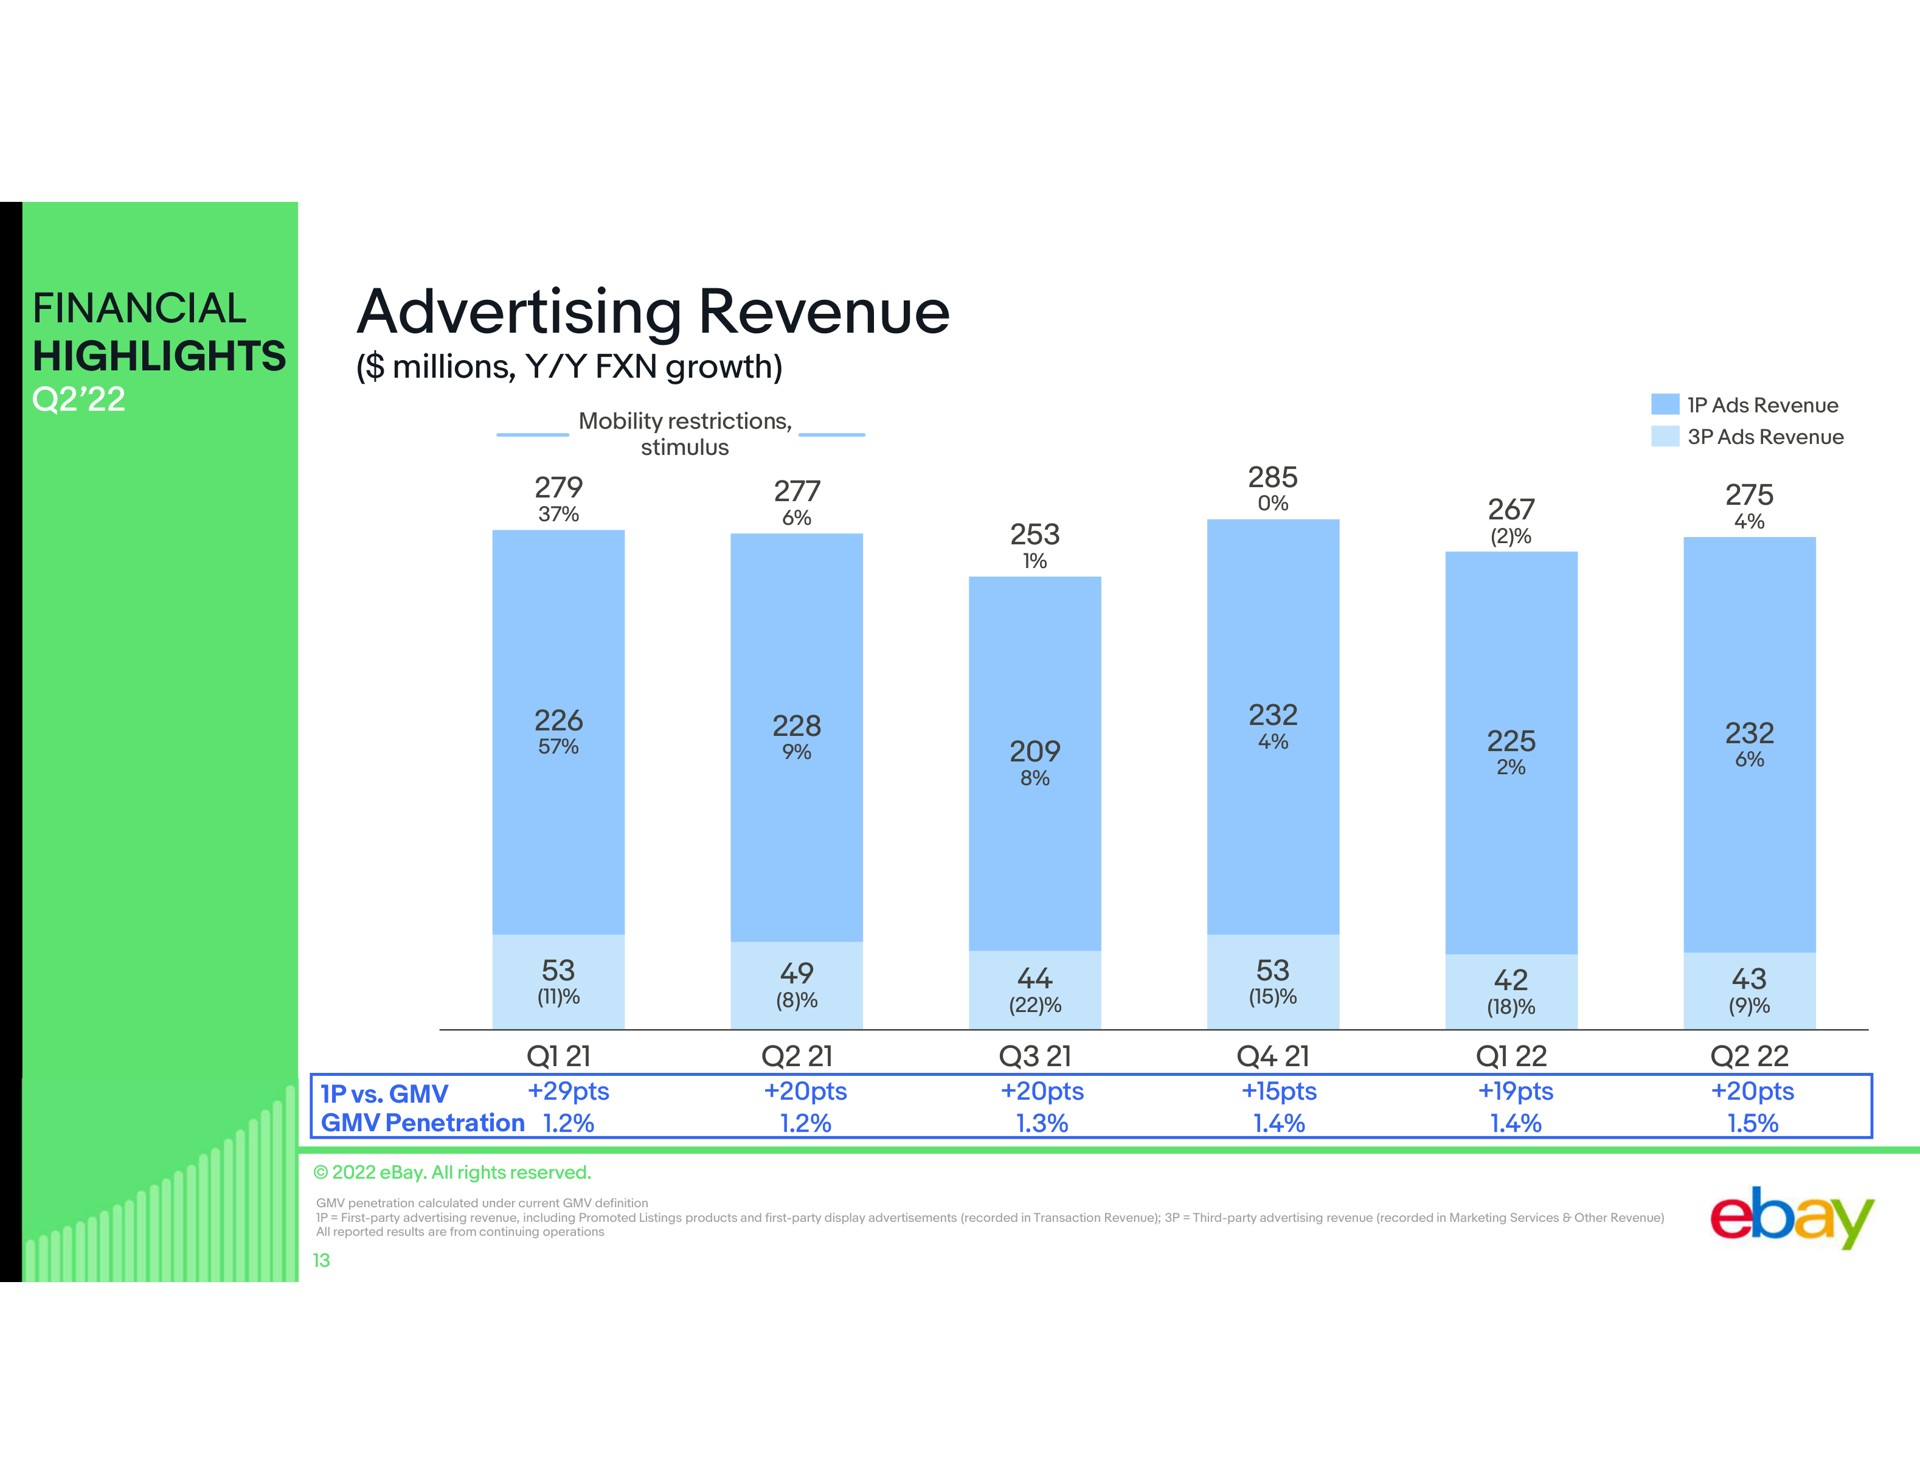 financial highlights advertising revenue | eBay